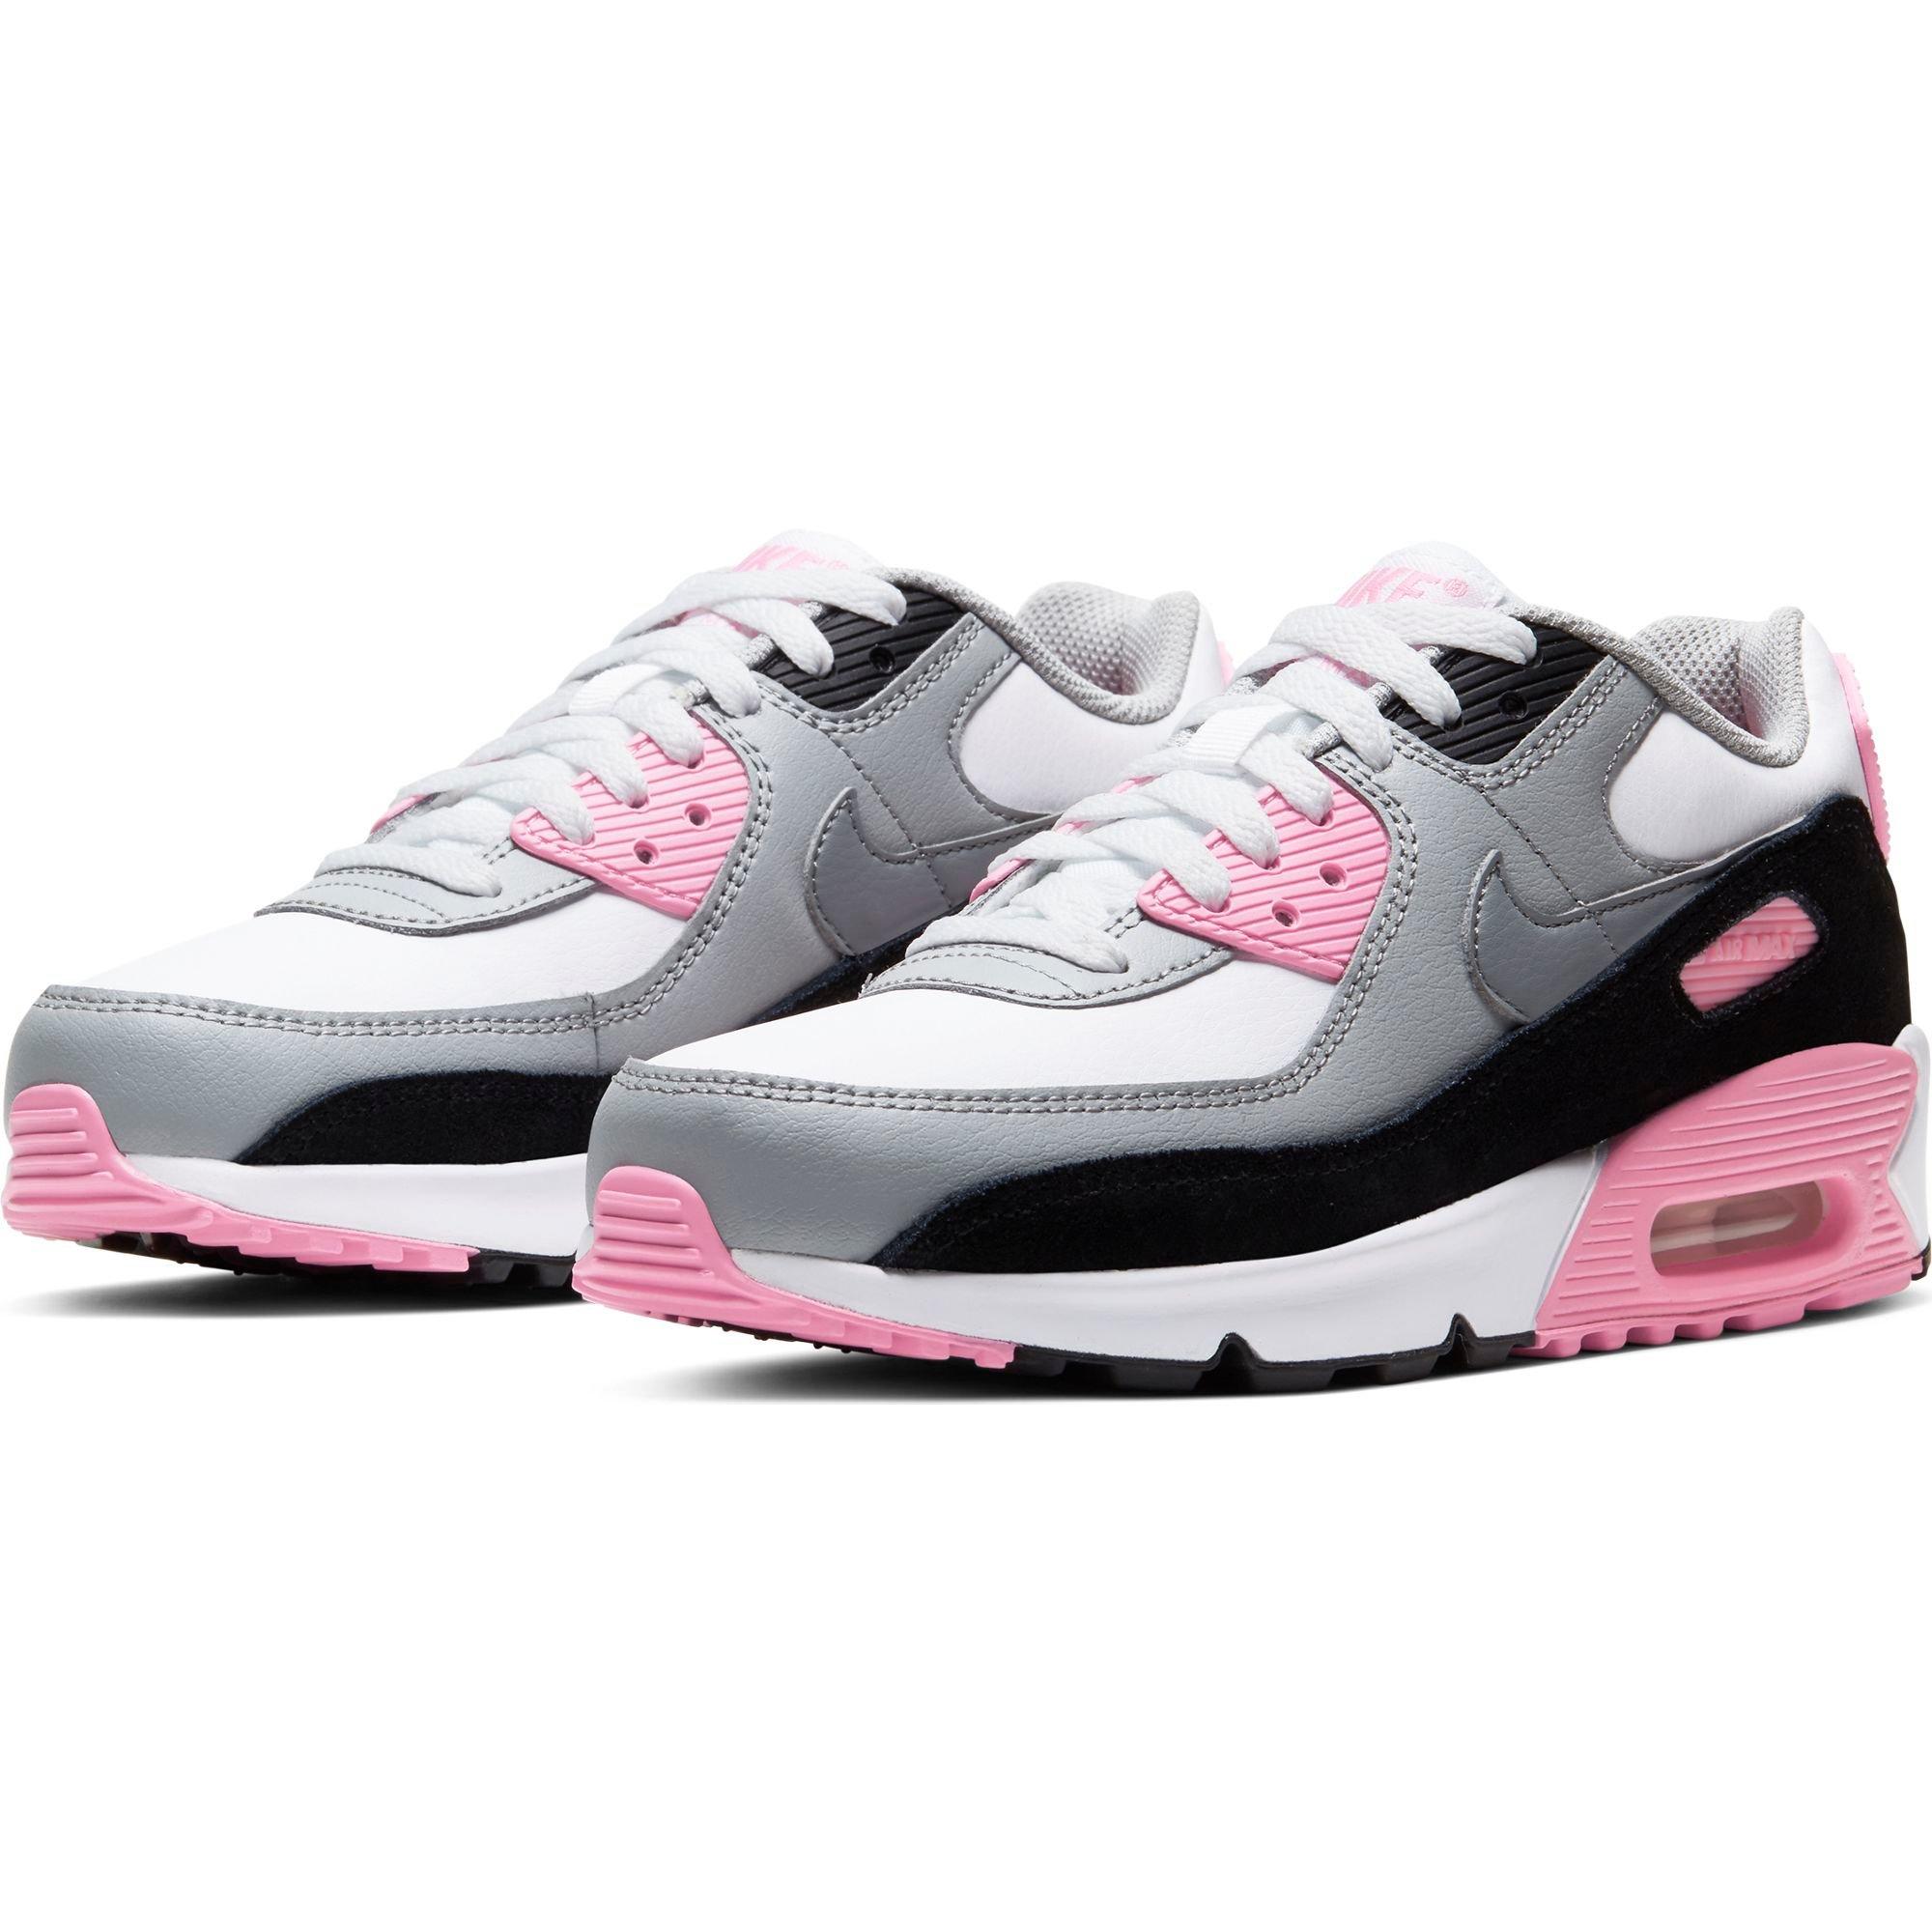 air max 90 pink and grey